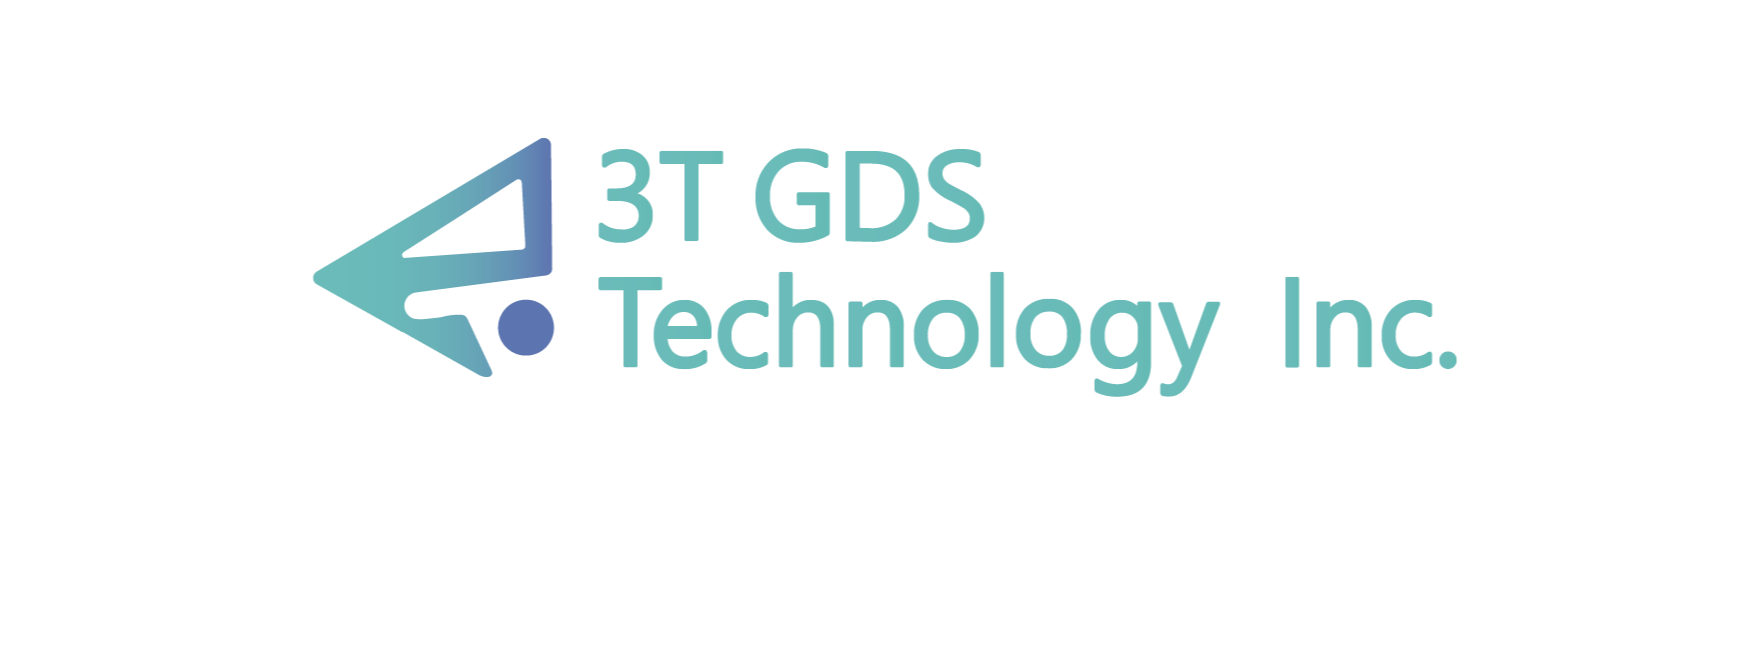 3T GDS 福利網